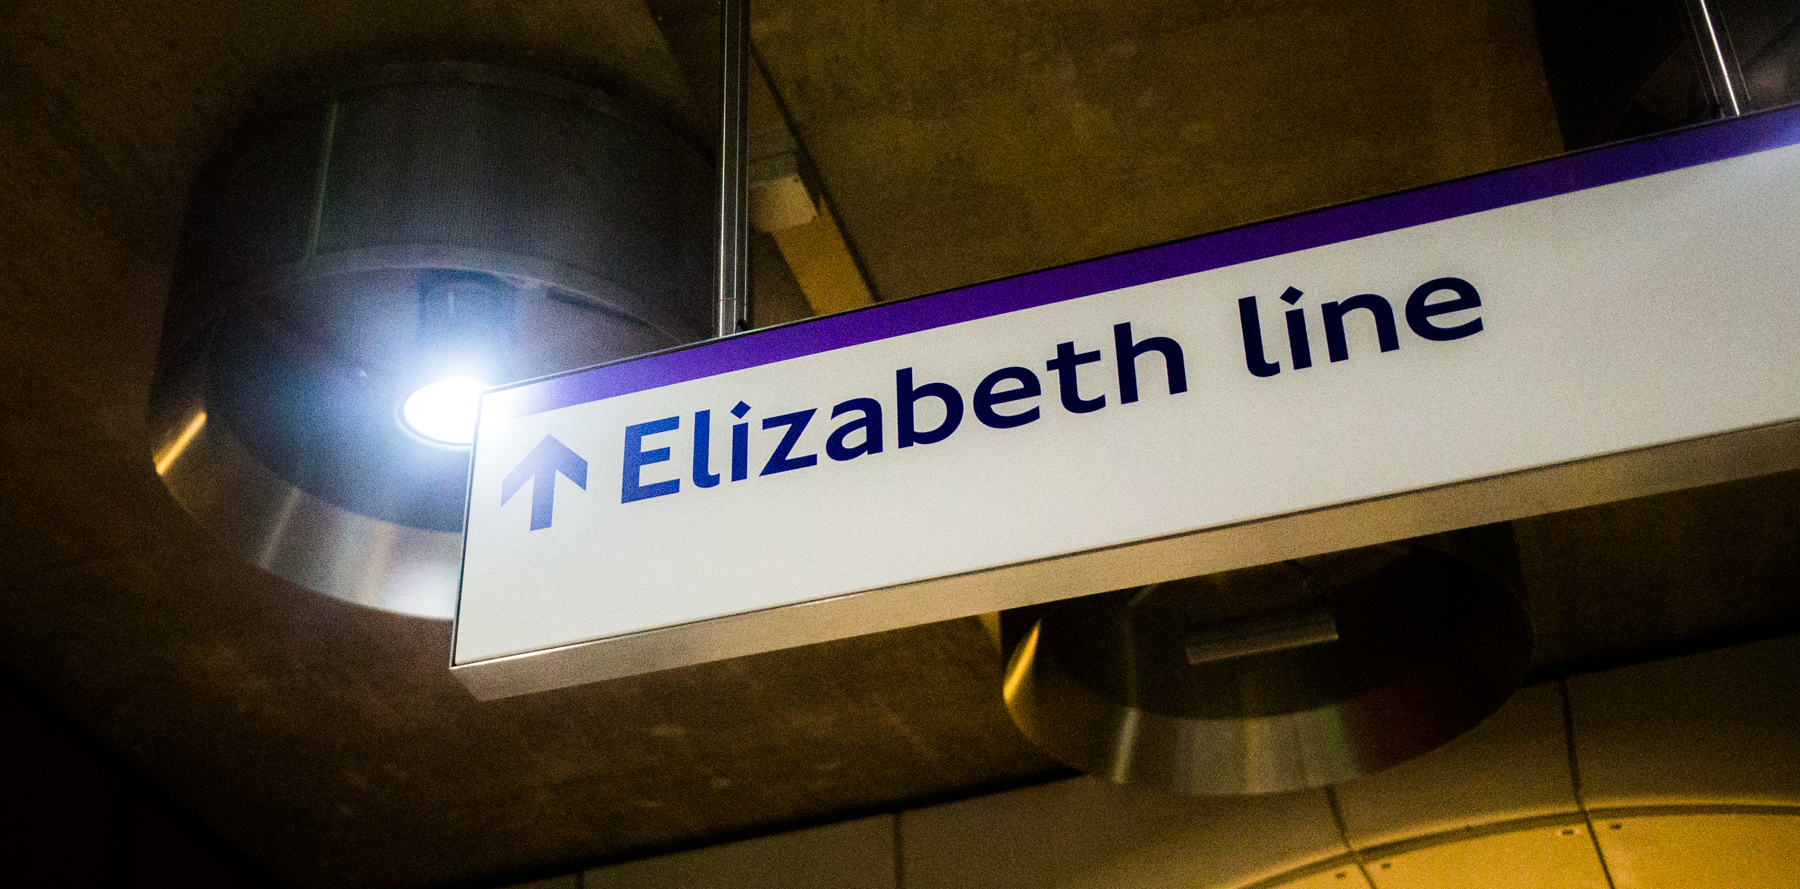 Sign for the Elizabeth line